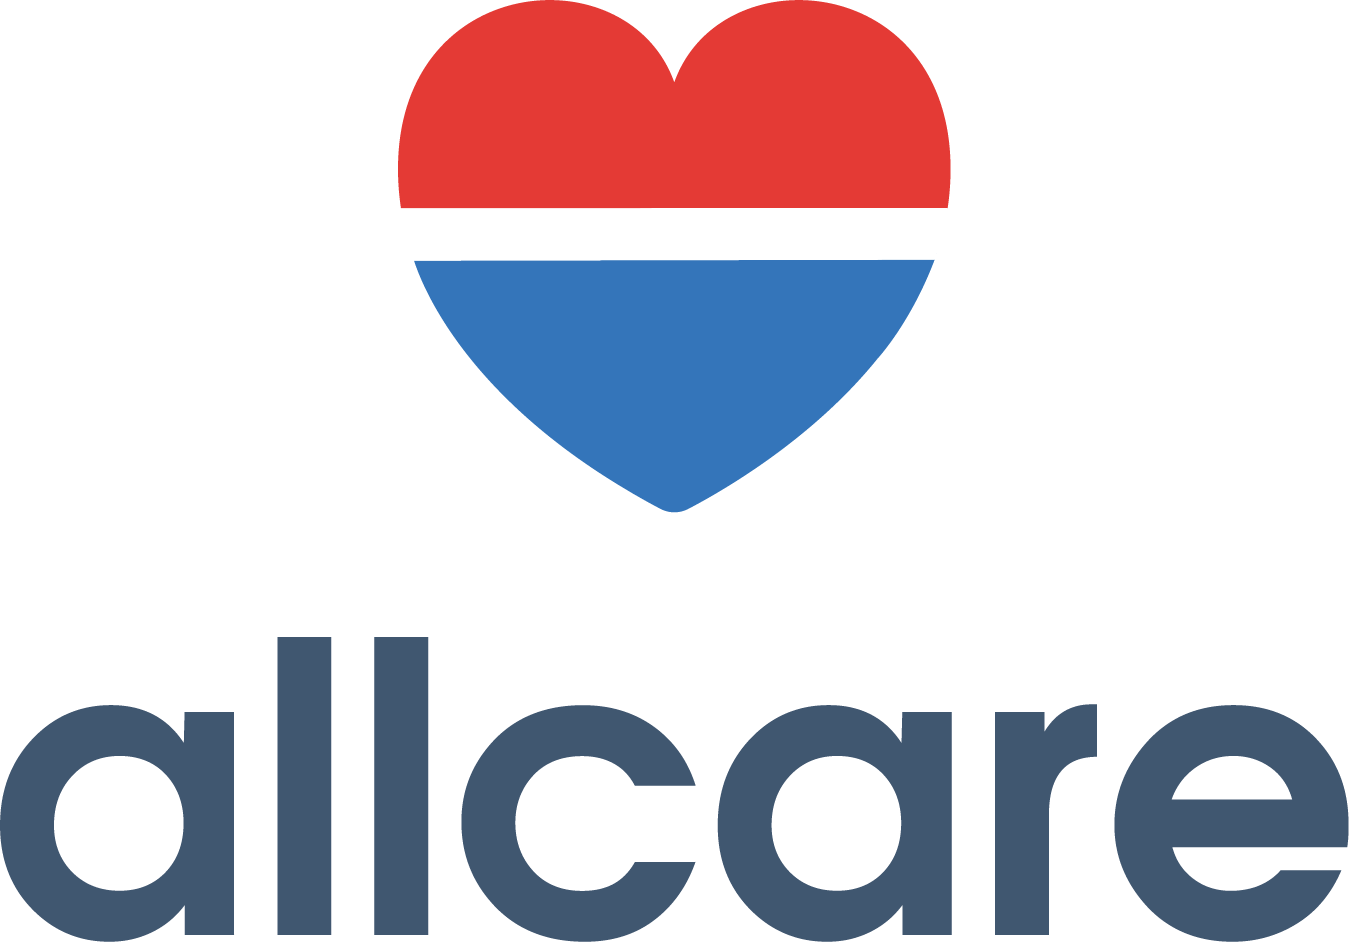 AllCare Primary & Immediate Care - Northside Logo